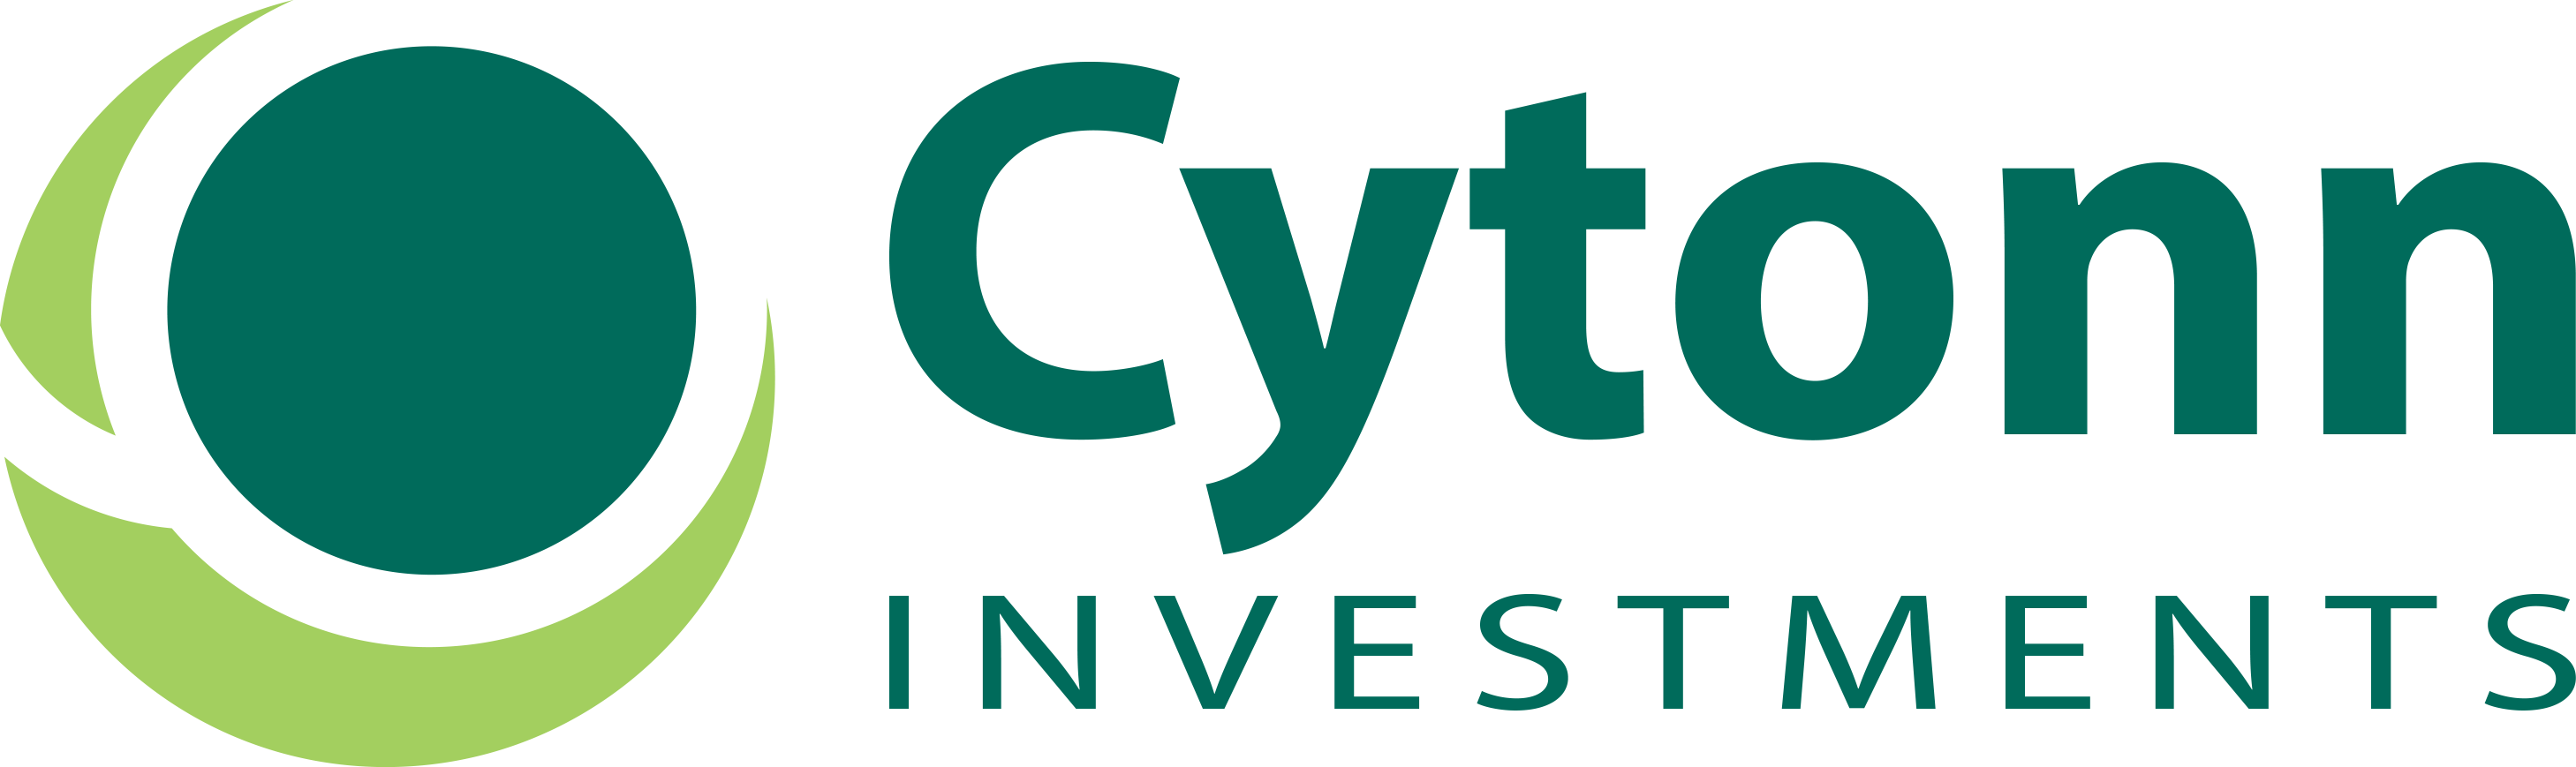 Cytonn Investments Logo